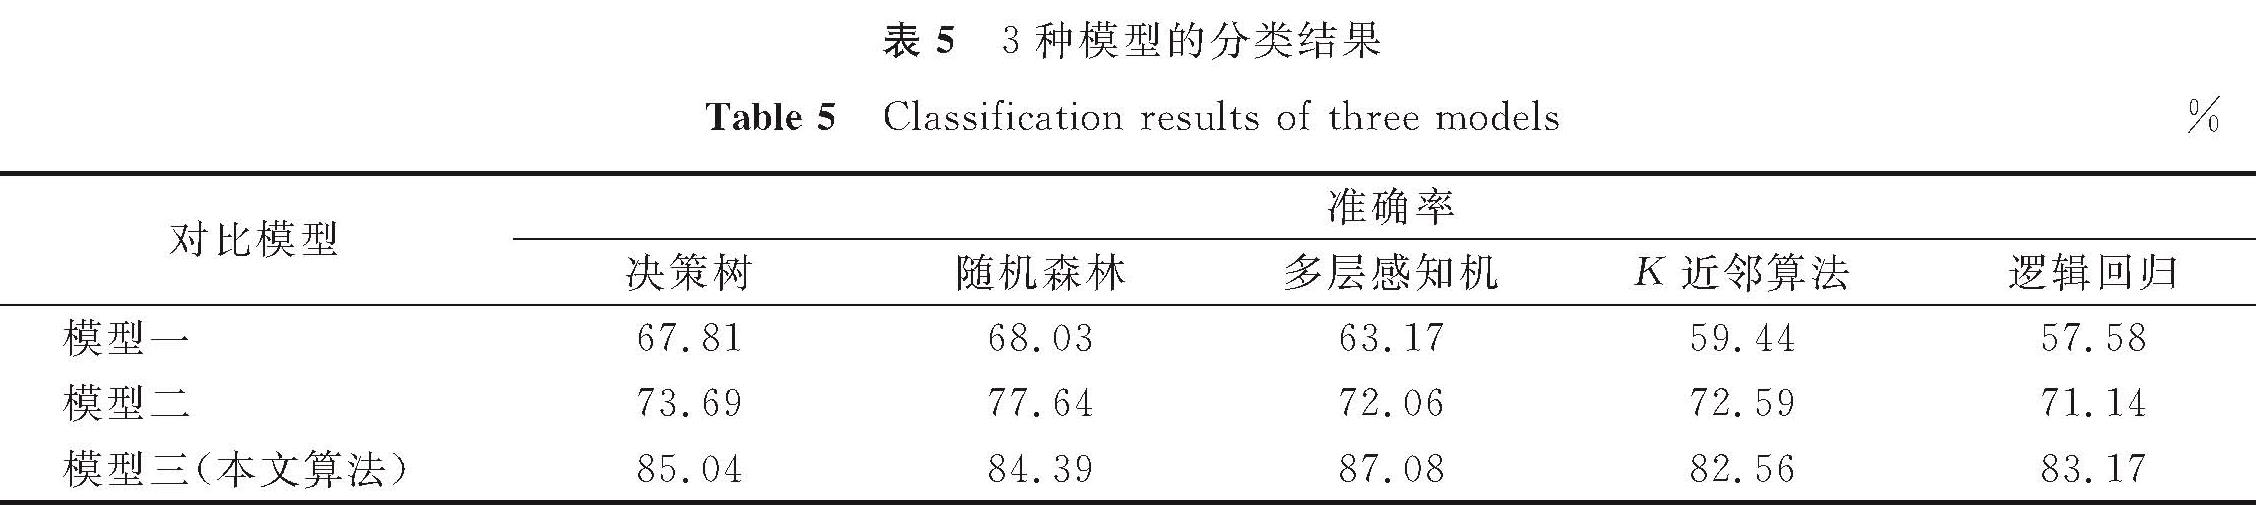 表5 3种模型的分类结果<br/>Table 5 Classification results of three models%